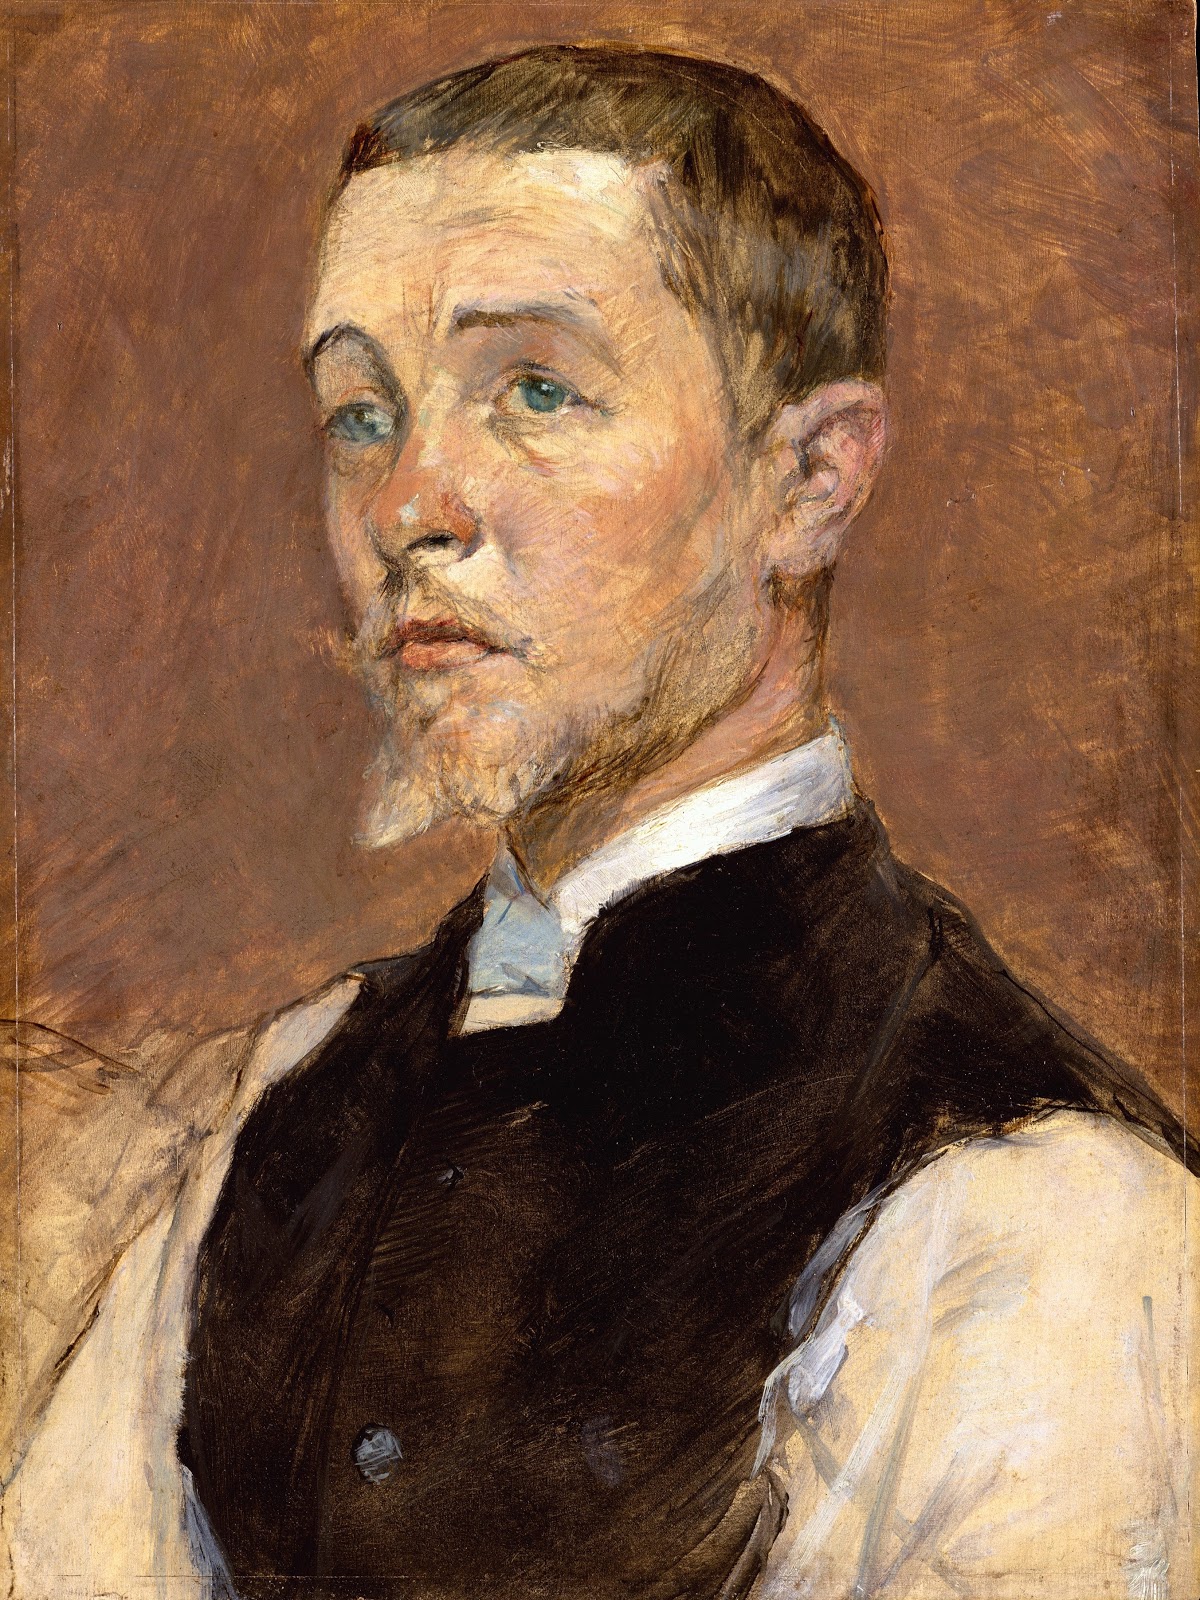 Henri+de+Toulouse+Lautrec-1864-1901 (11).jpg